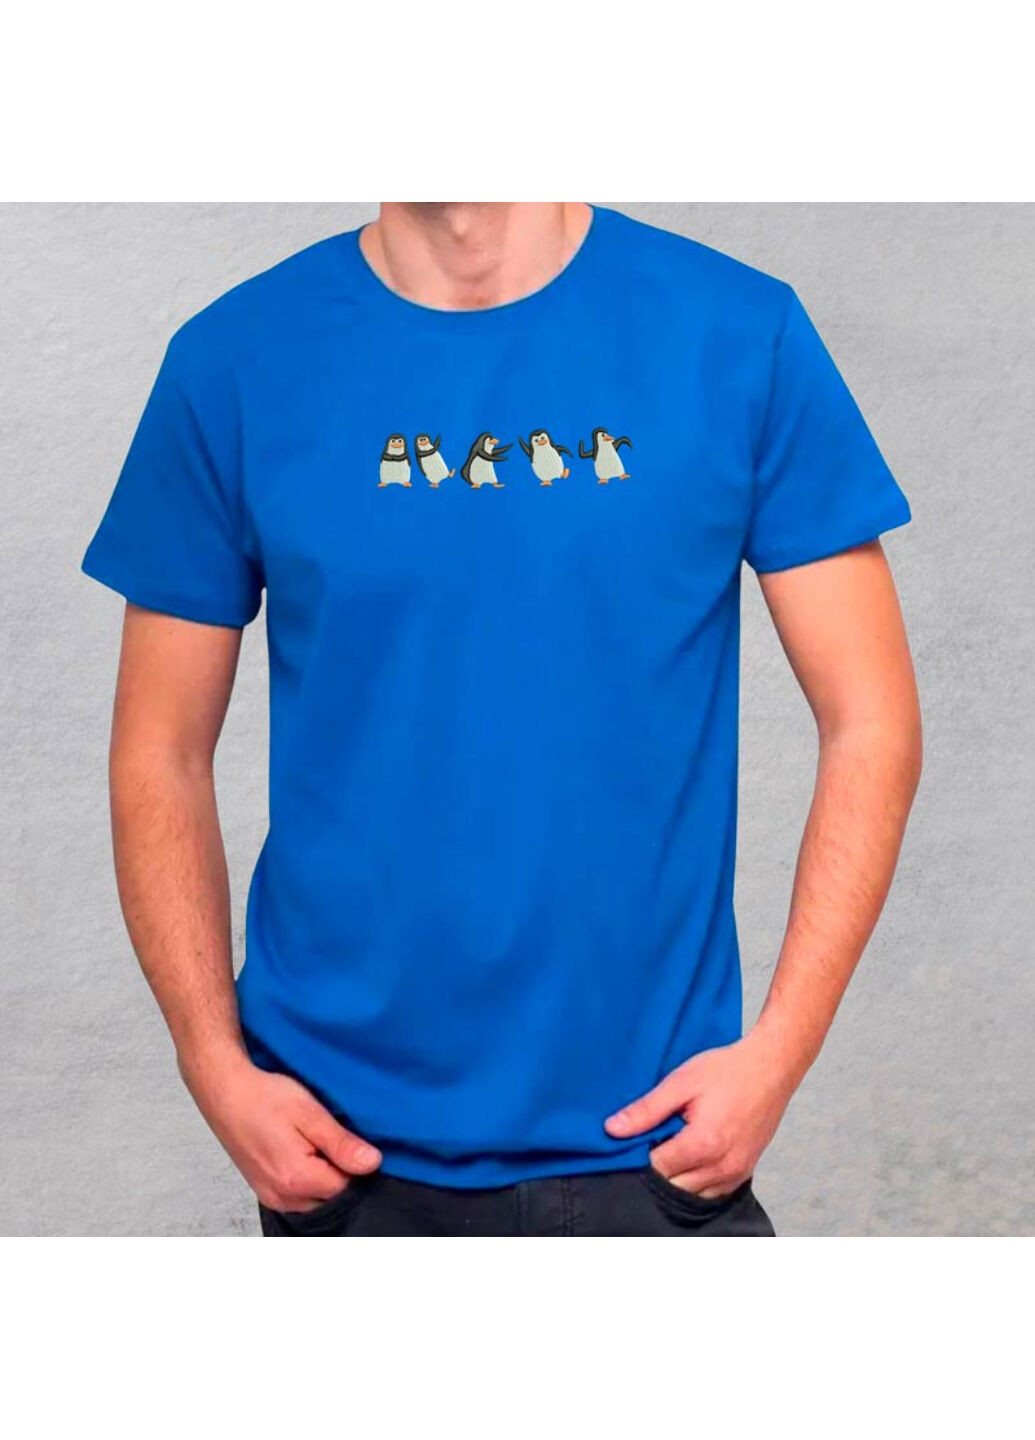 Синя футболка з вишивкою пінгвінів 01-3 чоловіча синій xl No Brand